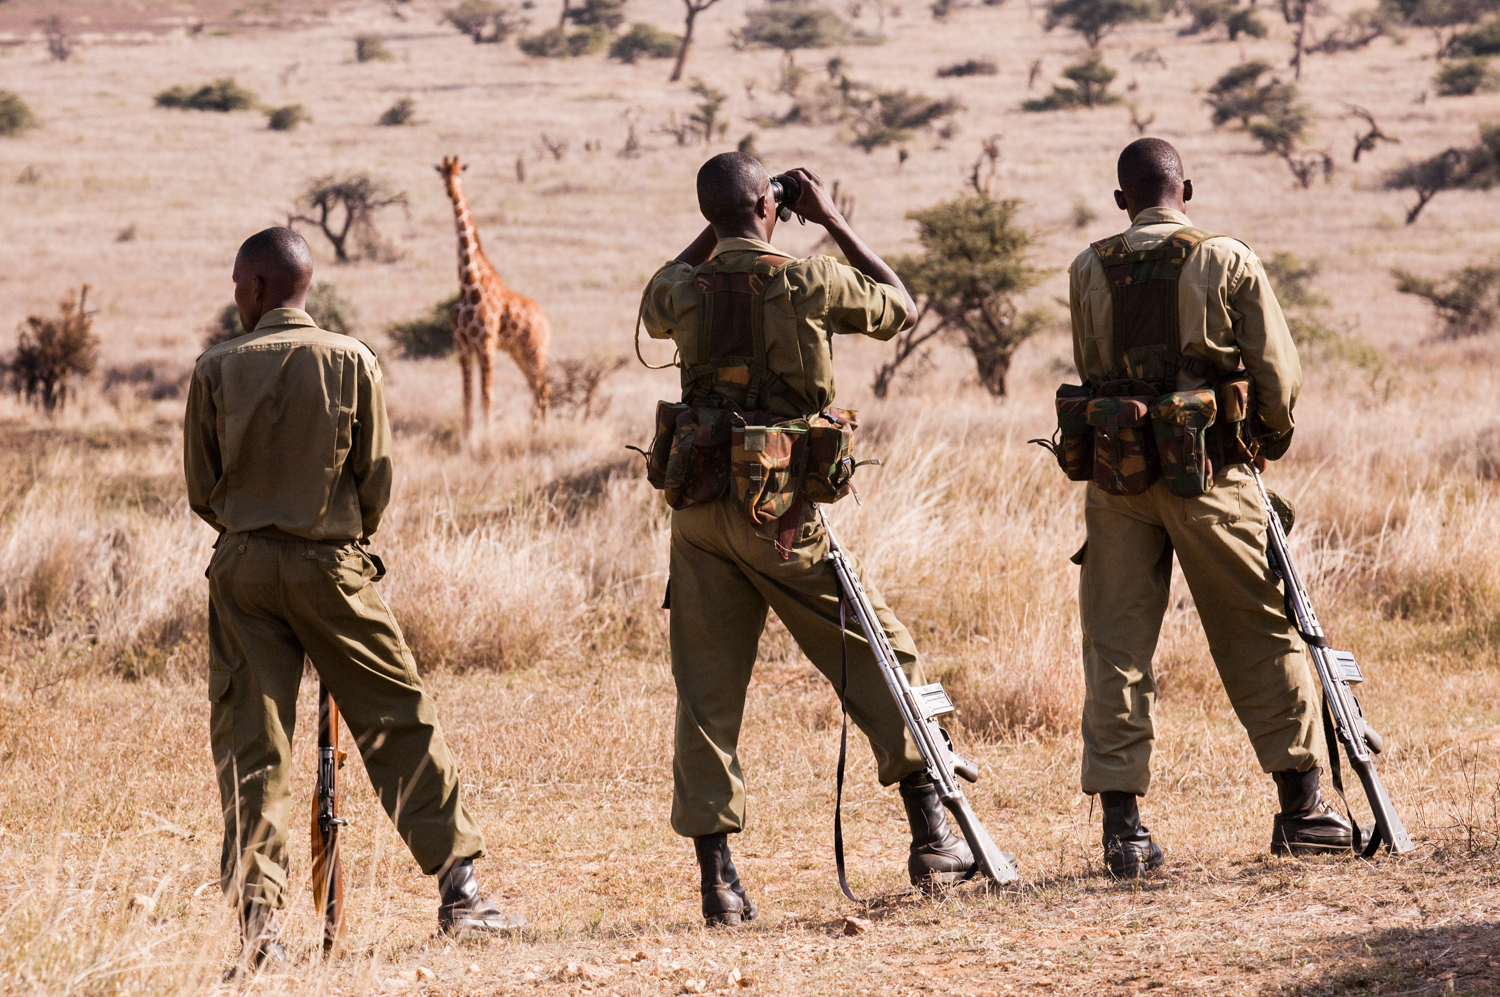  Members of an anti-poaching unit patrol the wildlife park in Northern Kenya. 